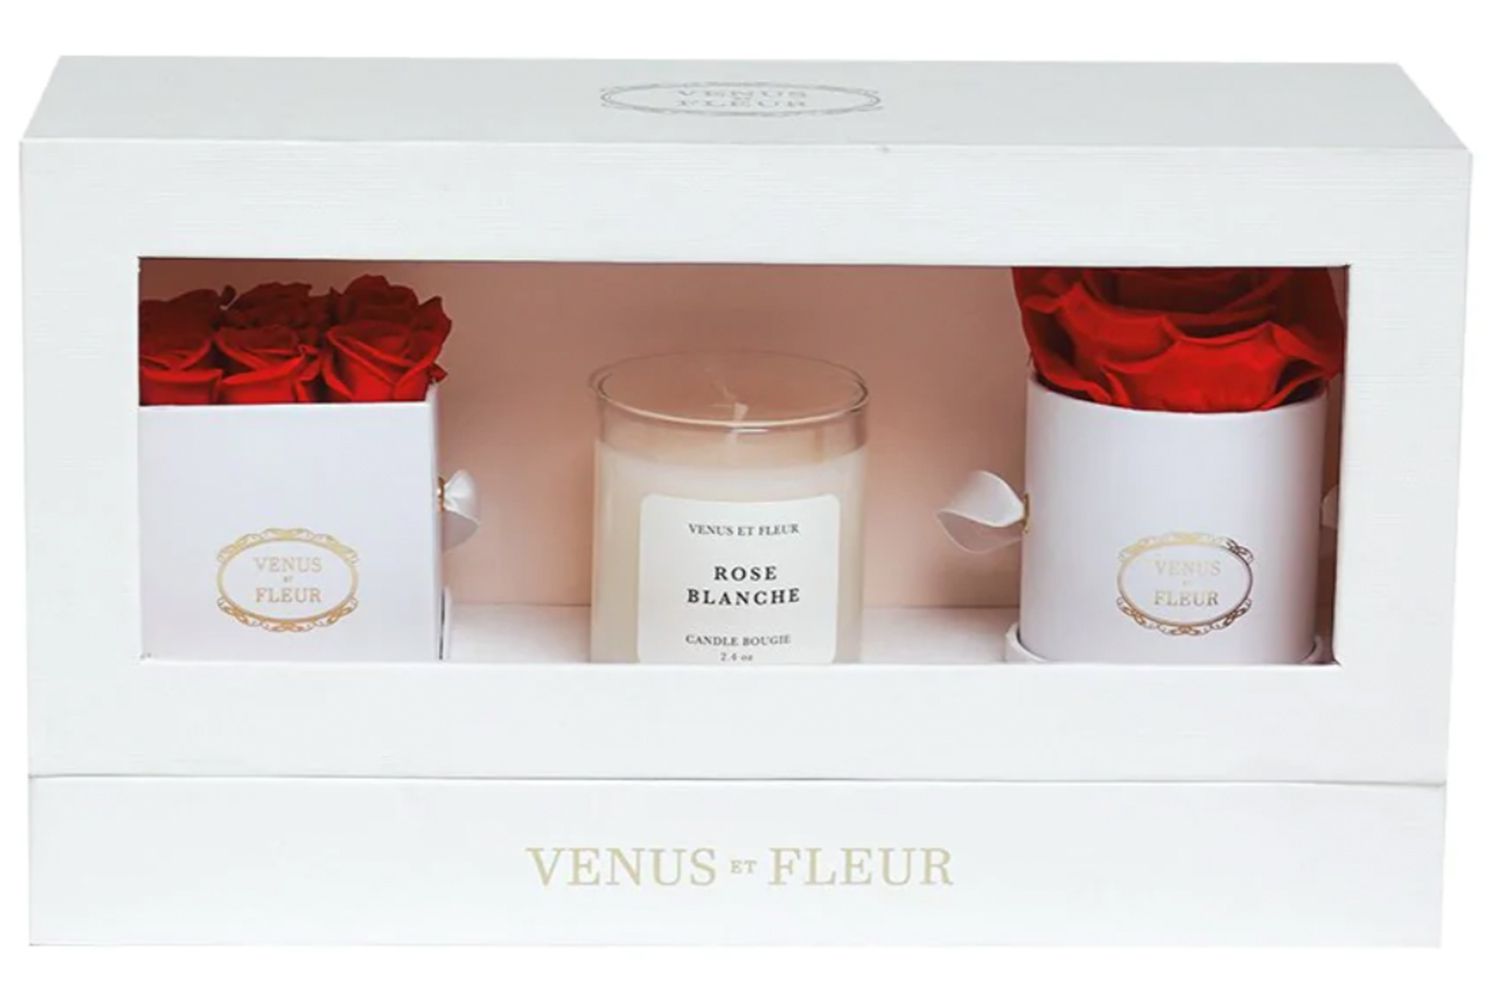 Venus et Fleur o pacote clássico